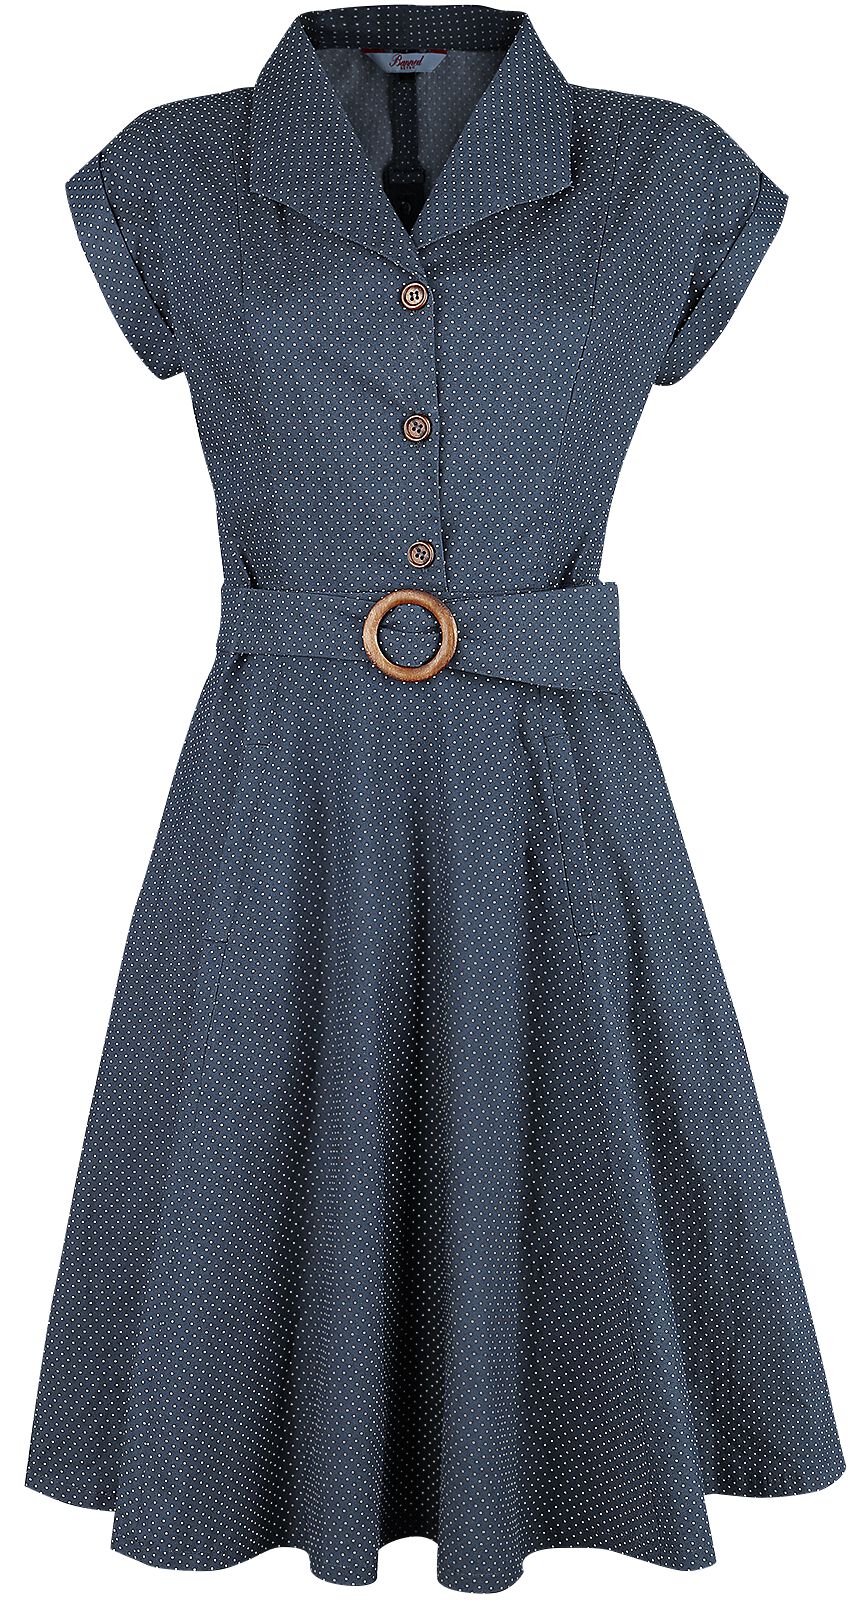 Banned Retro - Rockabilly Kleid knielang - Spot Perfection Fit & Flare Dress - XS bis 4XL - für Damen - Größe XS - navy